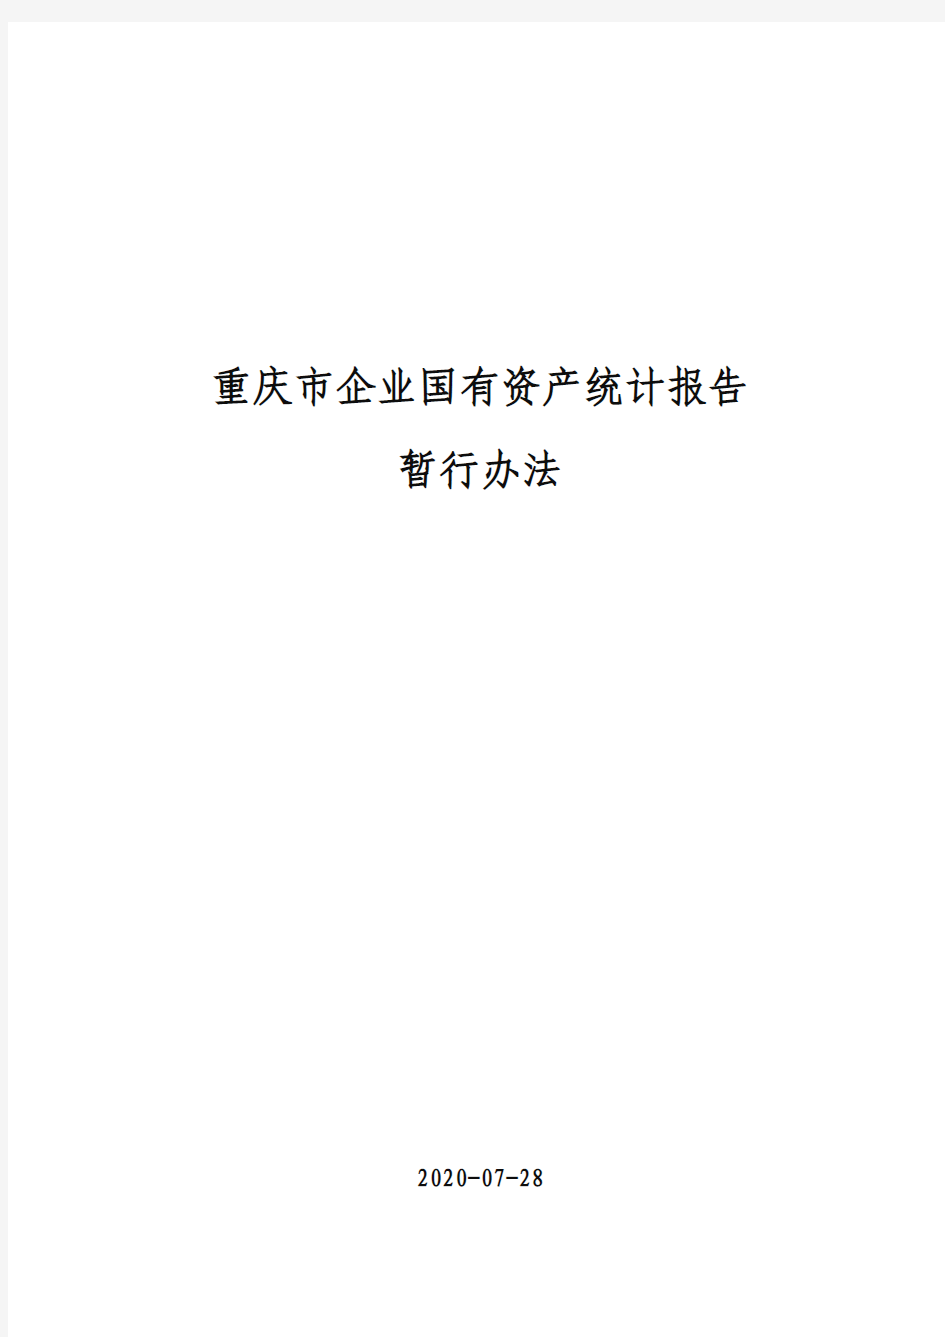 重庆市企业国有资产统计报告暂行办法